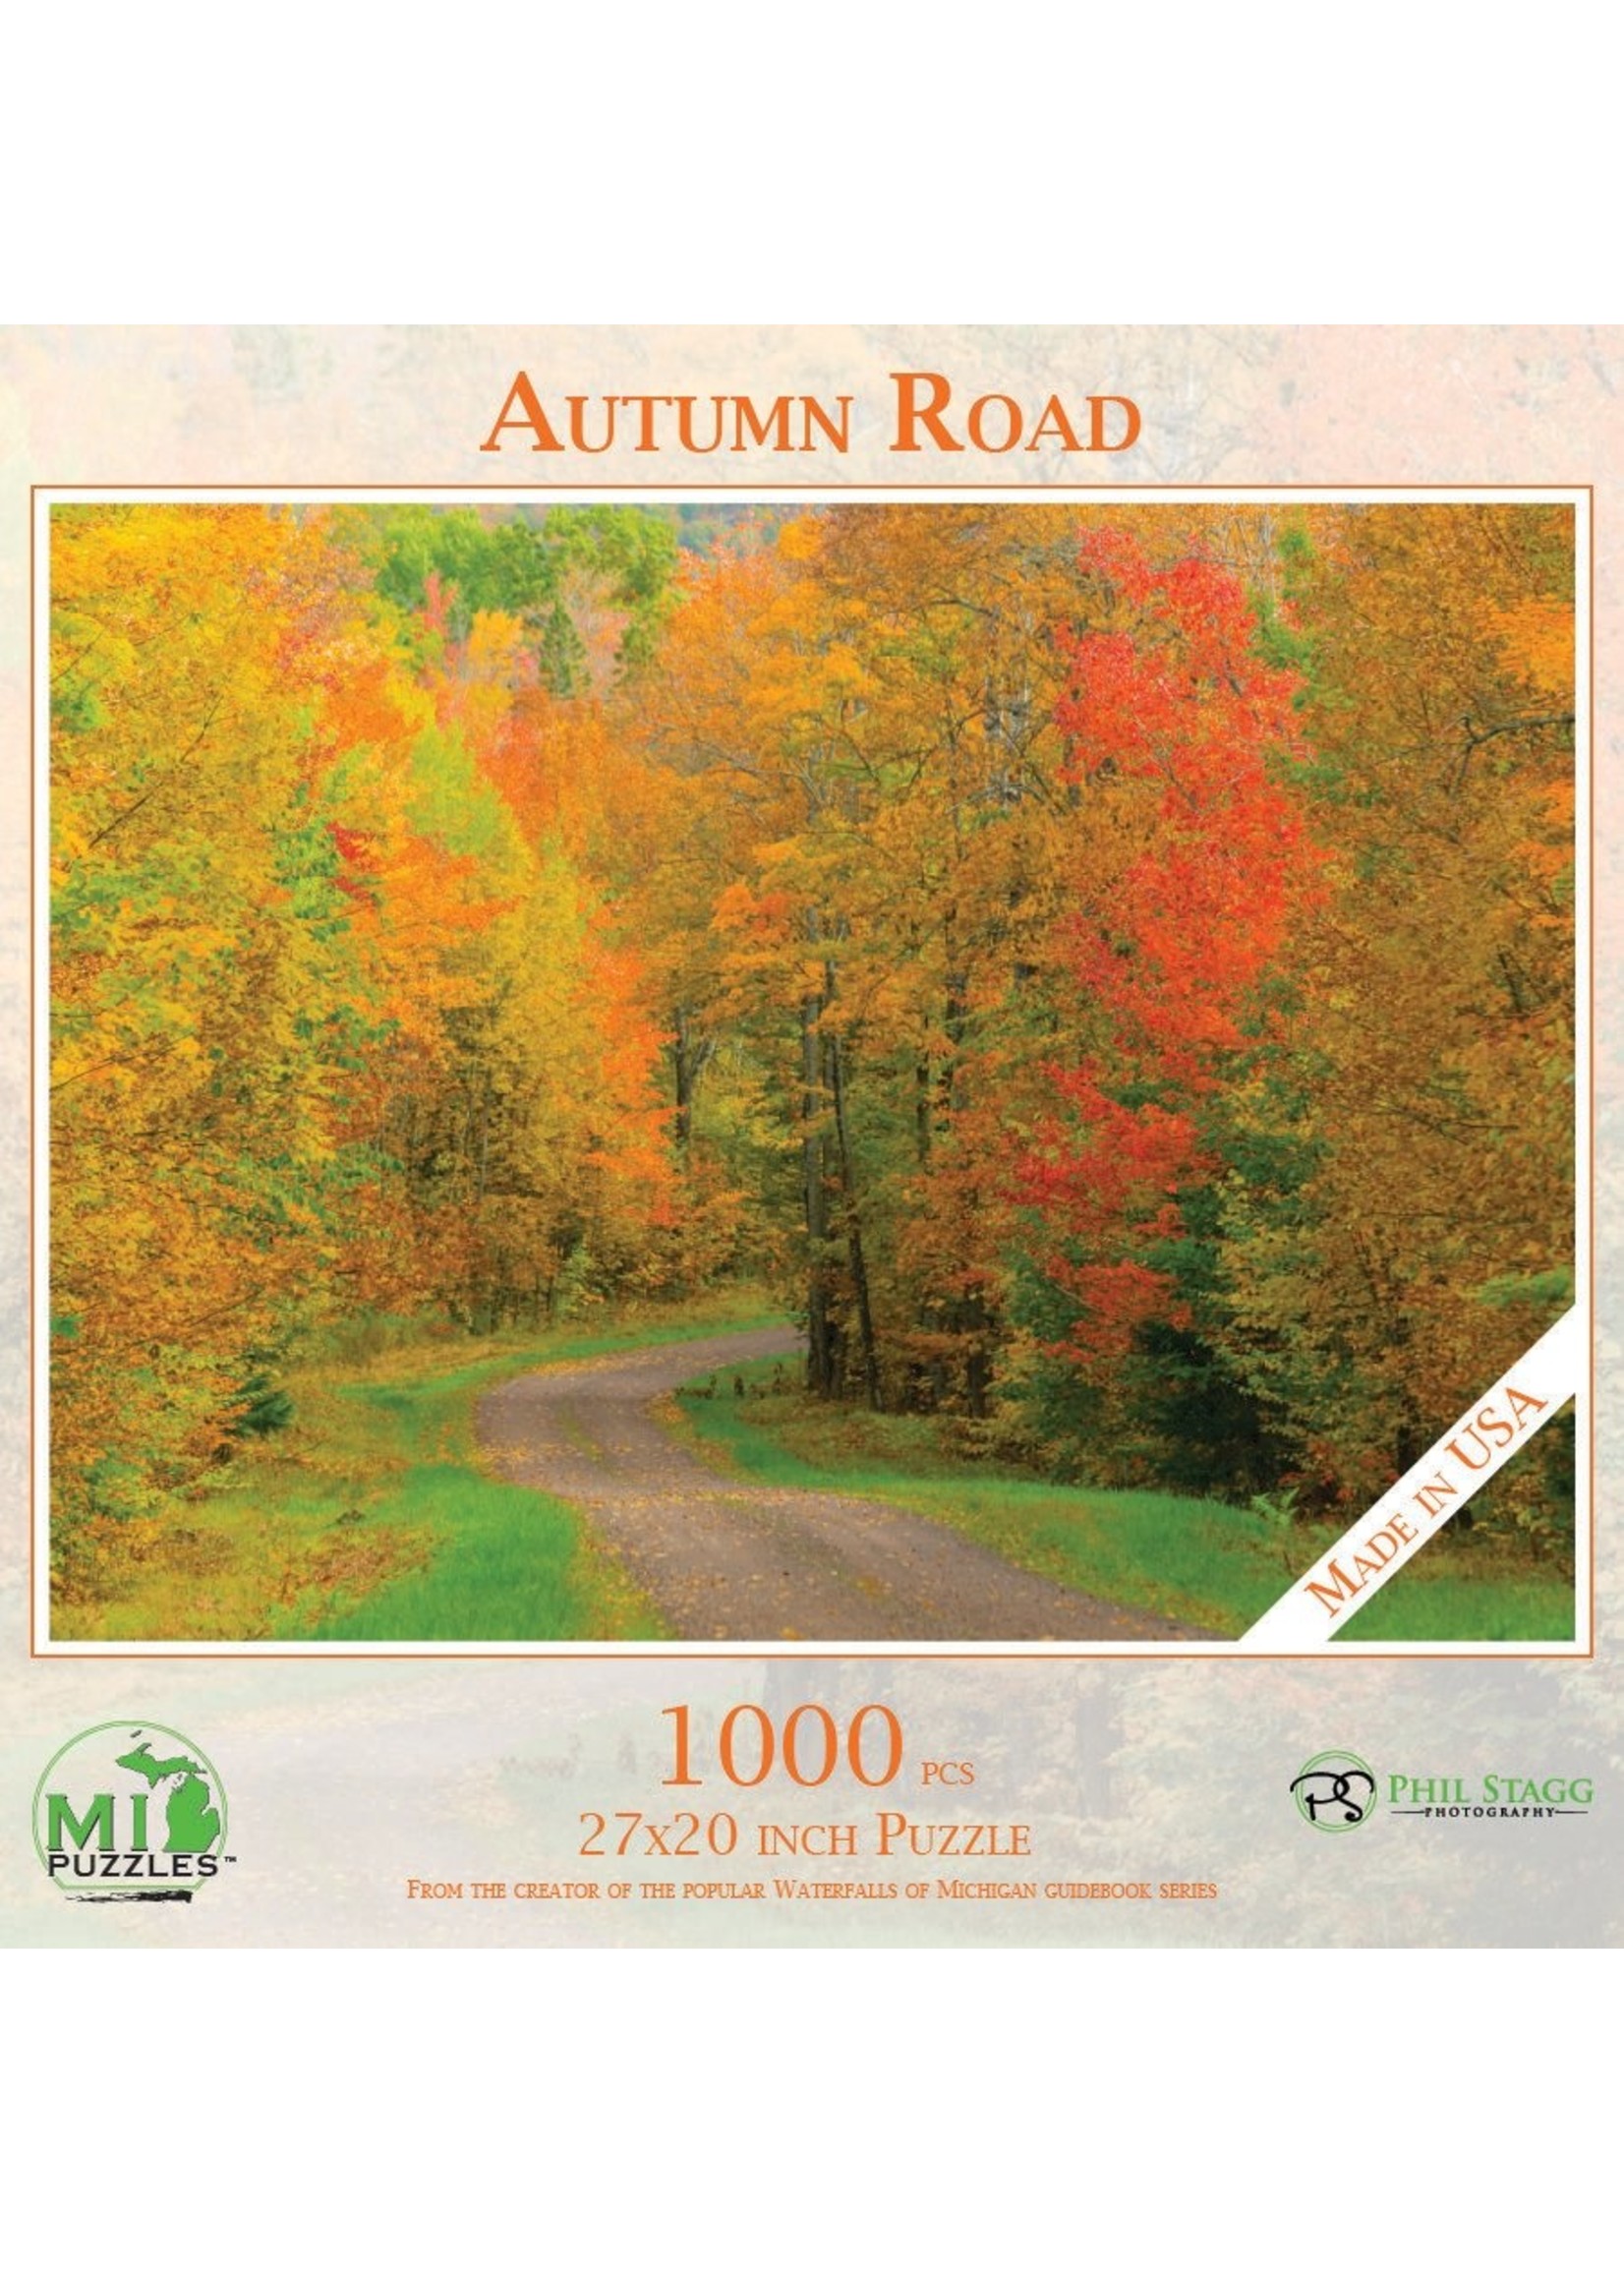 MI Puzzles Autumn Road Puzzle 1000